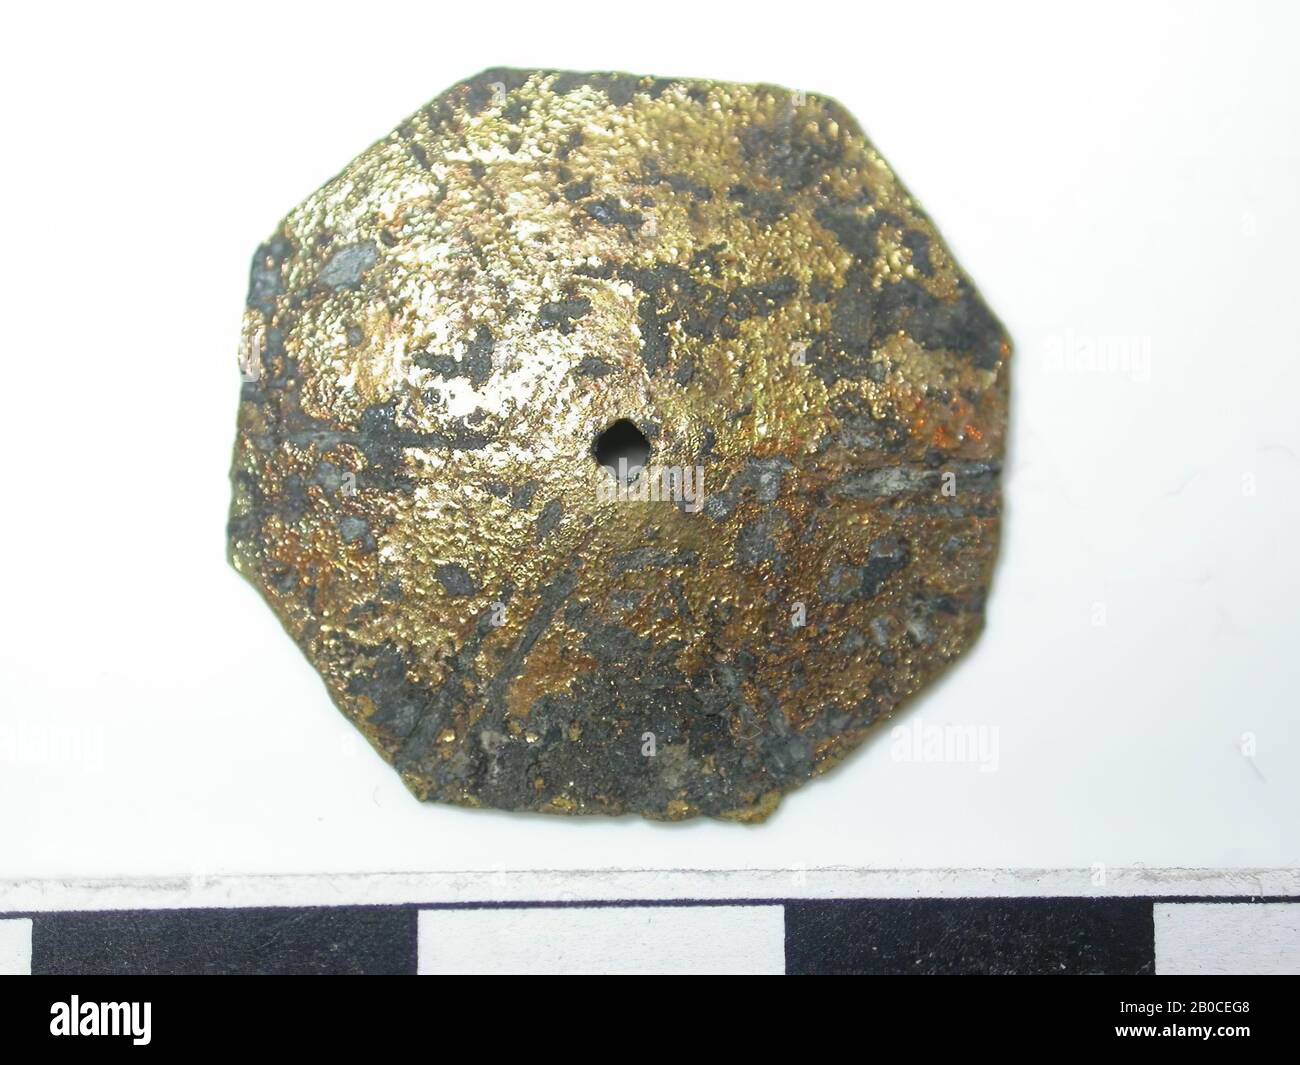 Forme octogonale, dorée avec taches sombres (alliage de cuivre). Forme d'octogone avec un trou au milieu. Le diamètre du trou est de 0,1 cm. Deux lignes s'exécutent du milieu aux huit coins. La surface est tissée. Le dos est creux. Aucune confirmation visible., course de ceinture, métal, alliage de cuivre, Dm: 2,35 cm, D: 0,2 cm, fin du XIVe siècle 1350-1400, Pays-Bas, Zélande, Hulst, Verdronken Land Banque D'Images